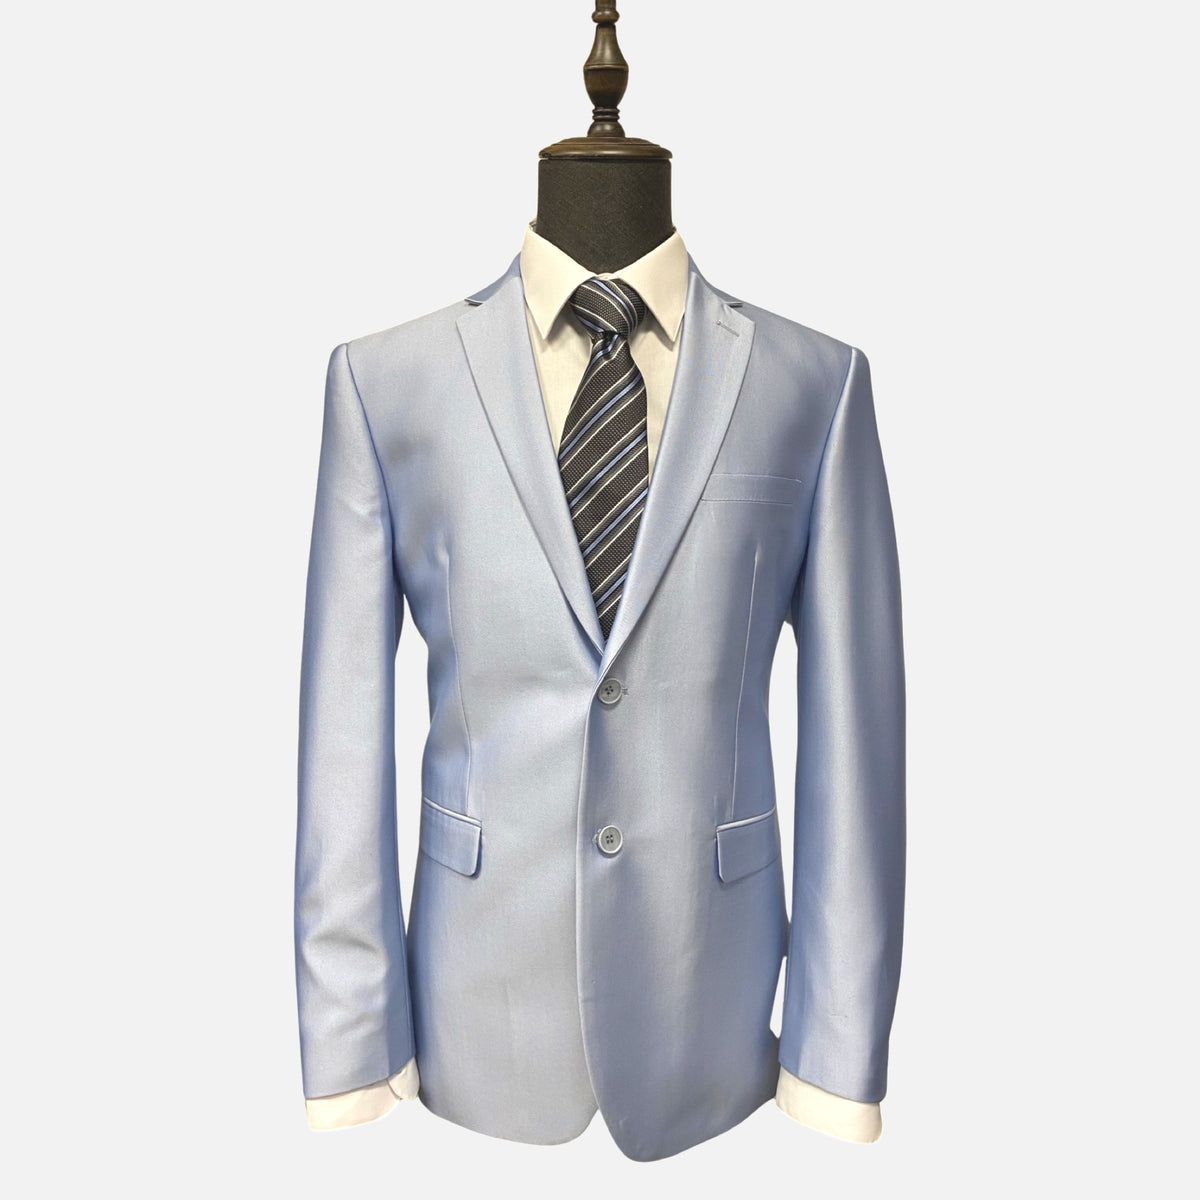 Light blue mens suit